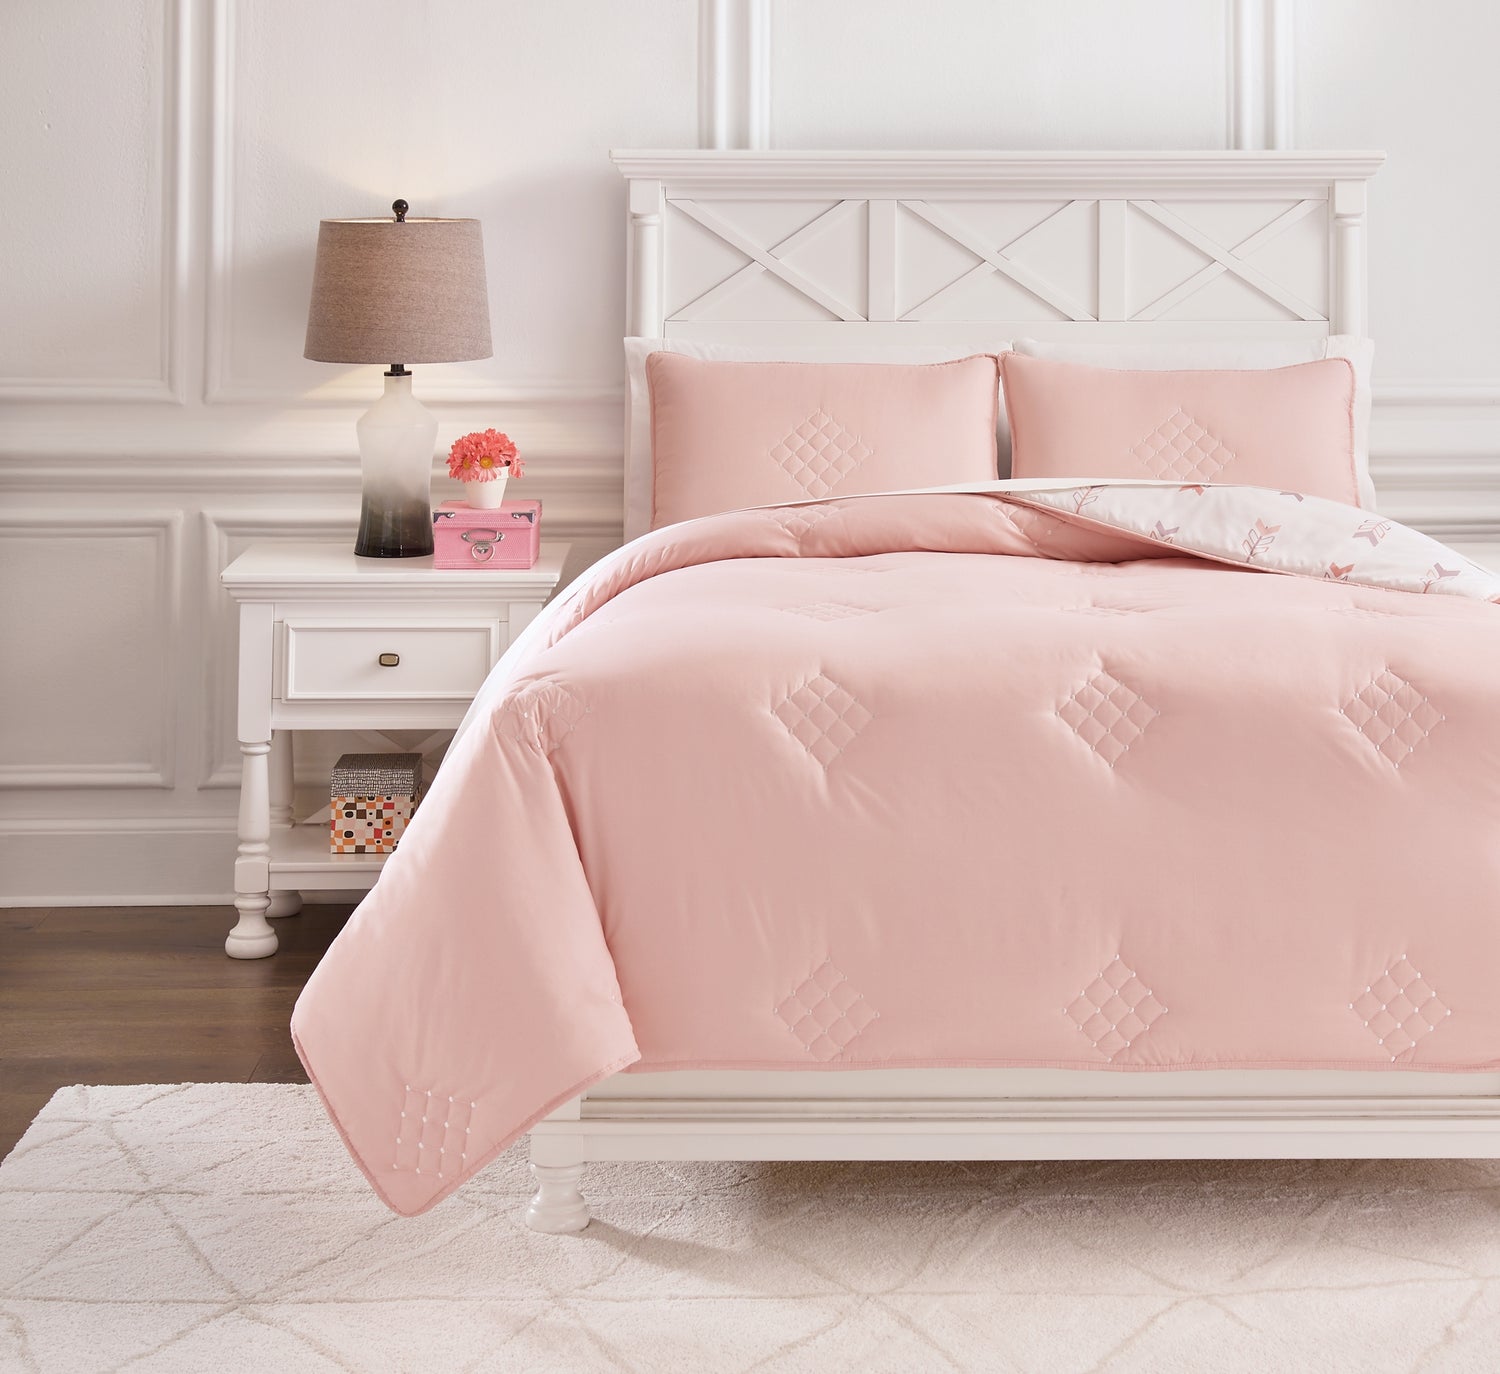 Bedding > Comforter Sets